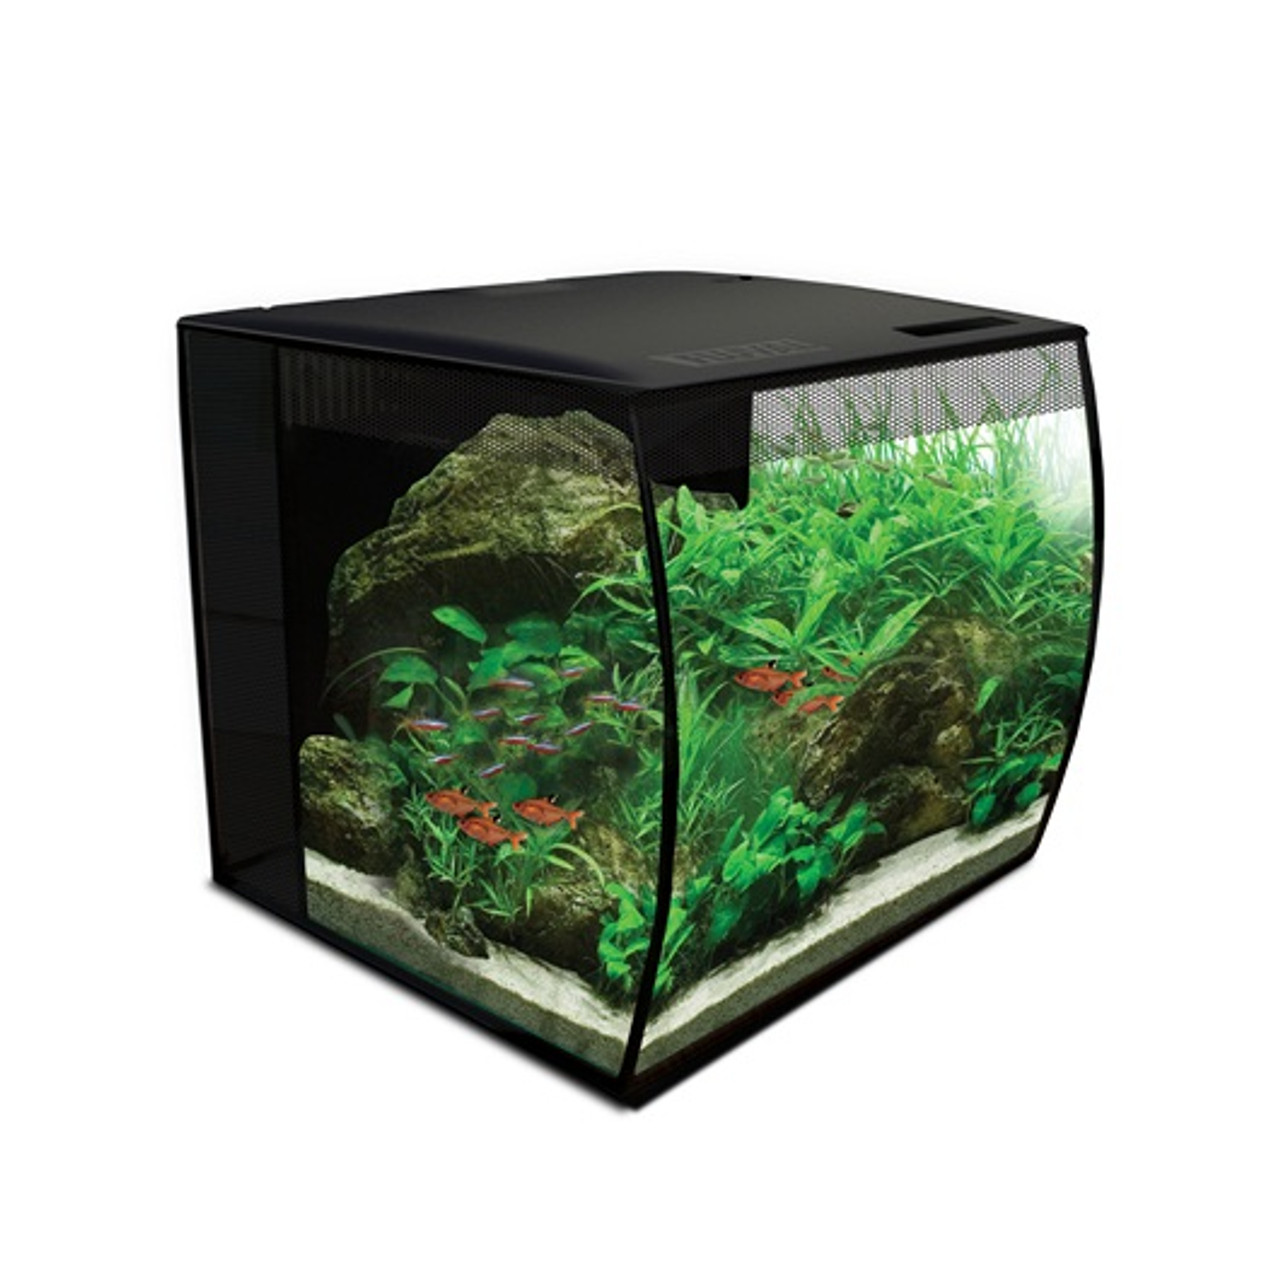 AQUA DELLA décoration pour aquarium 15,5 x 12,5 x 11 cm